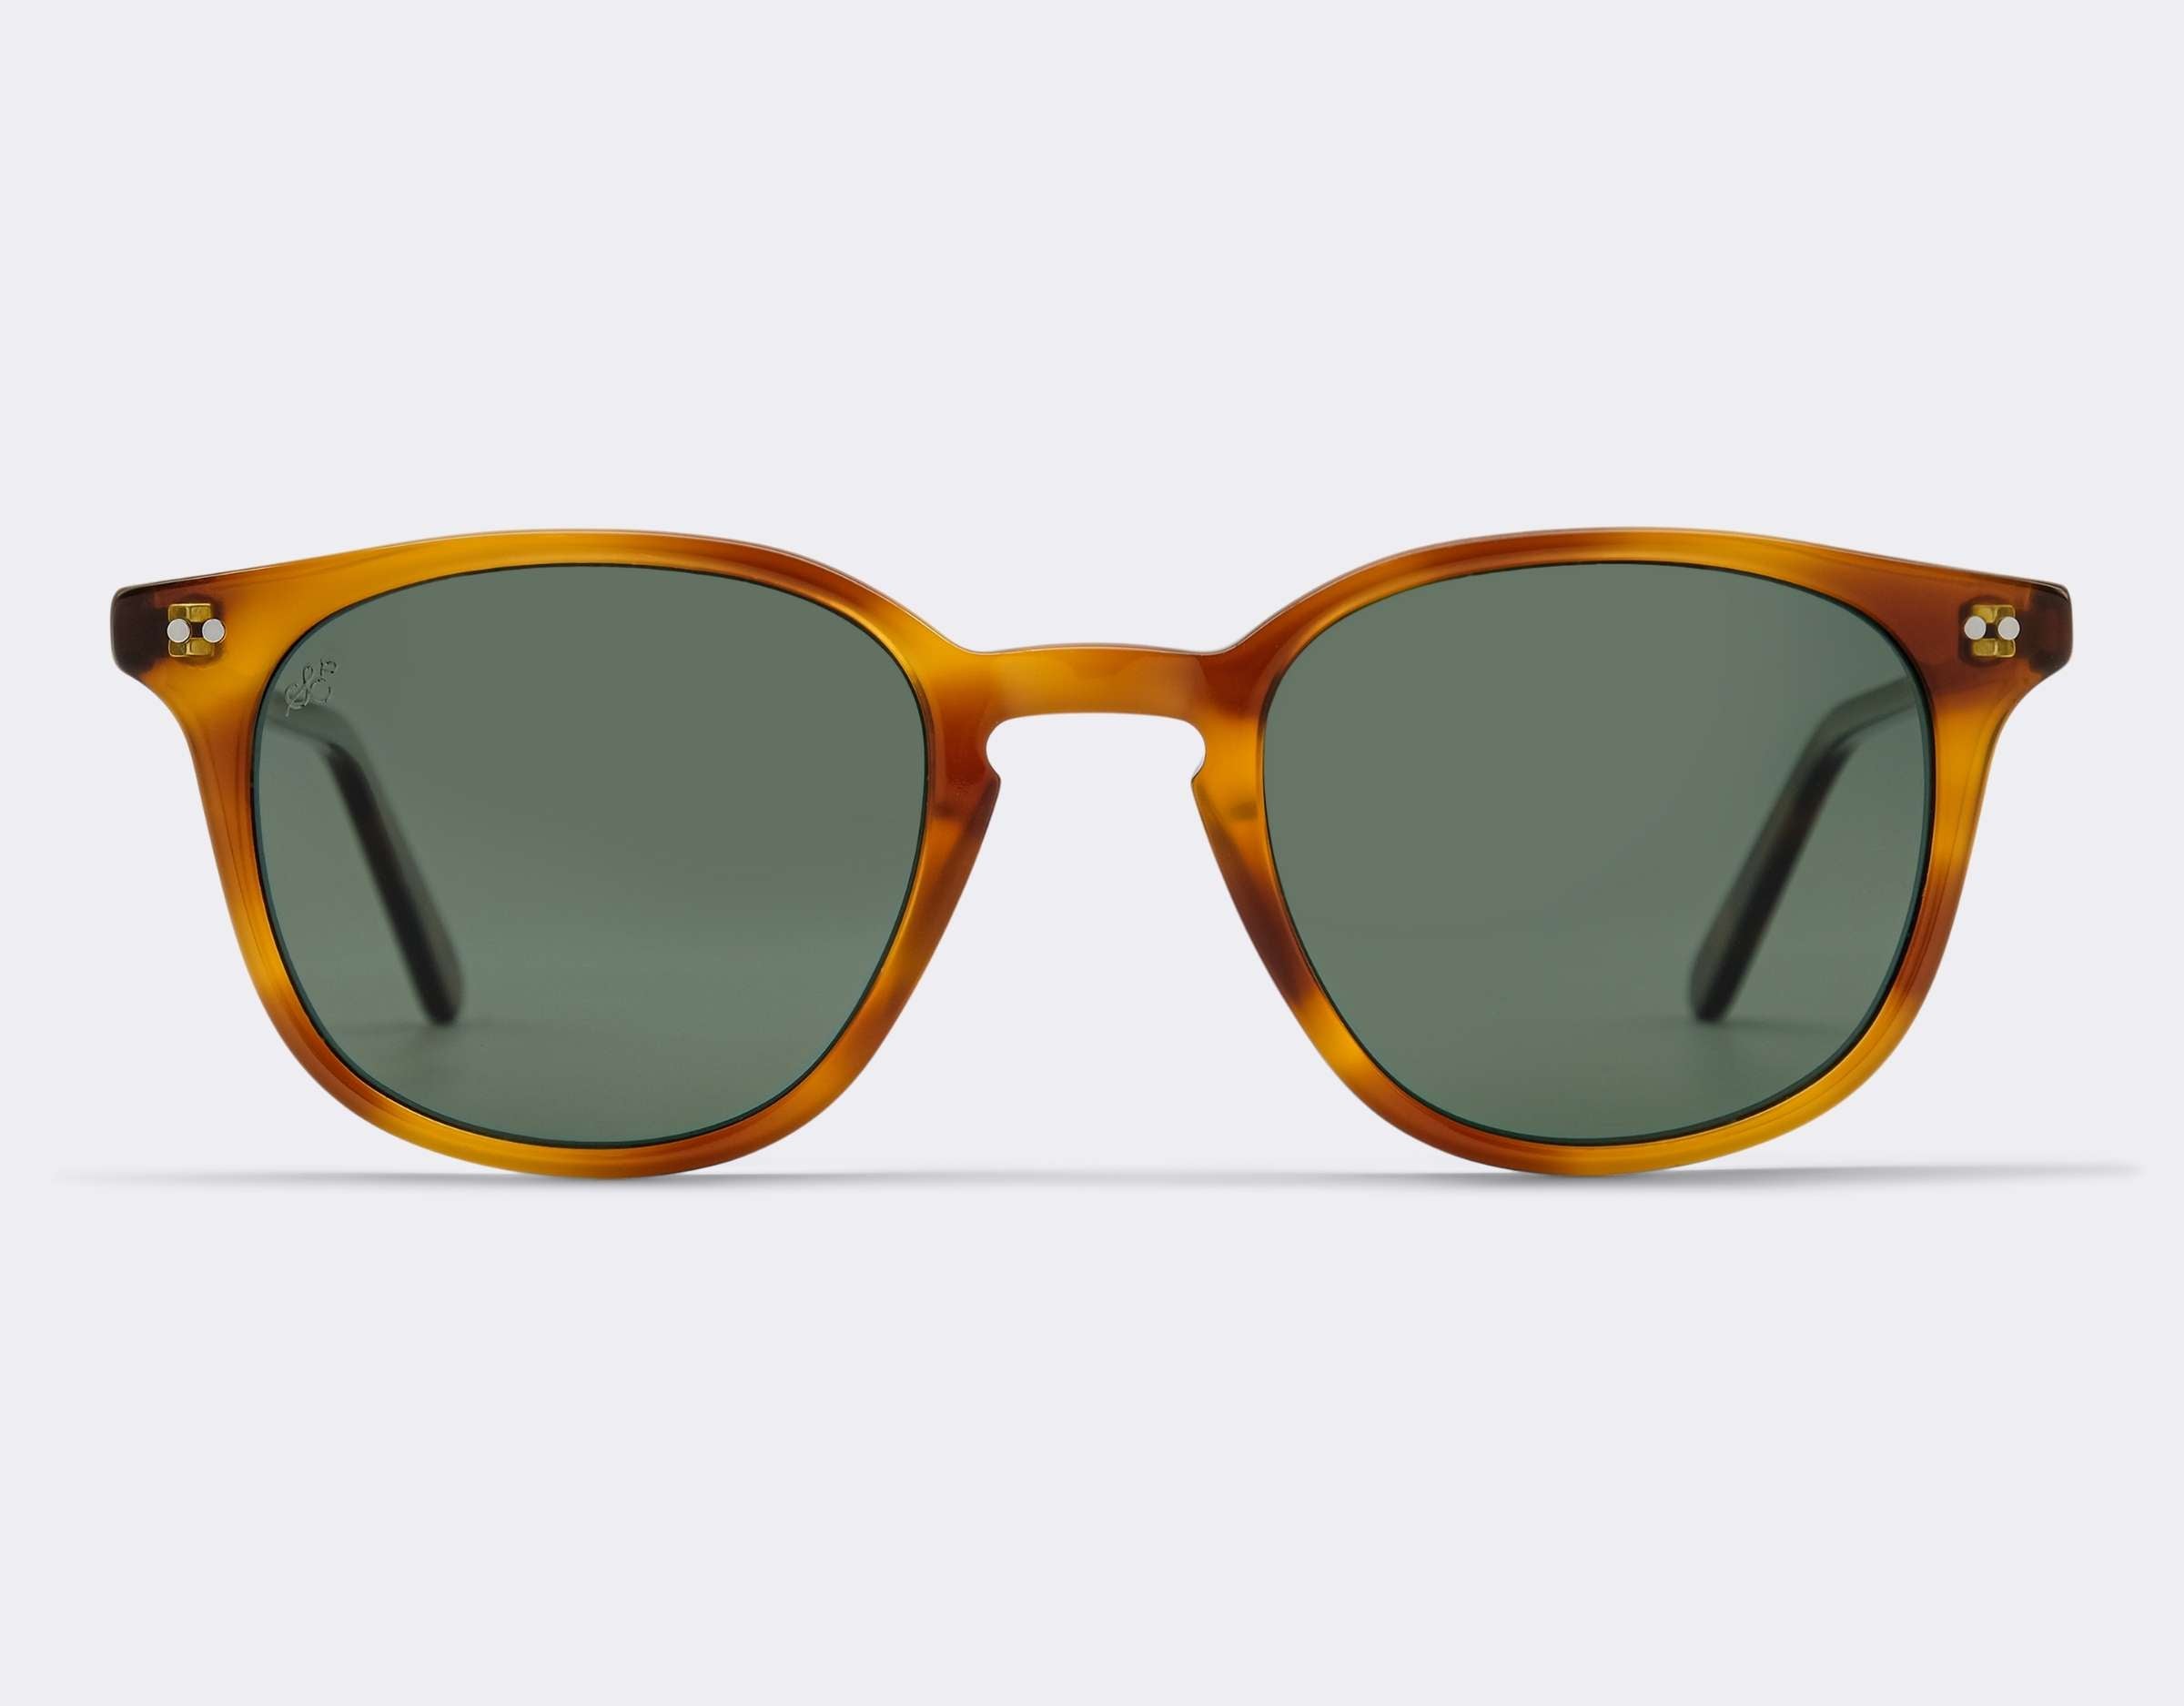 Octavia Polarised Sunglasses SummerEyez Honeycomb - Olive Green 